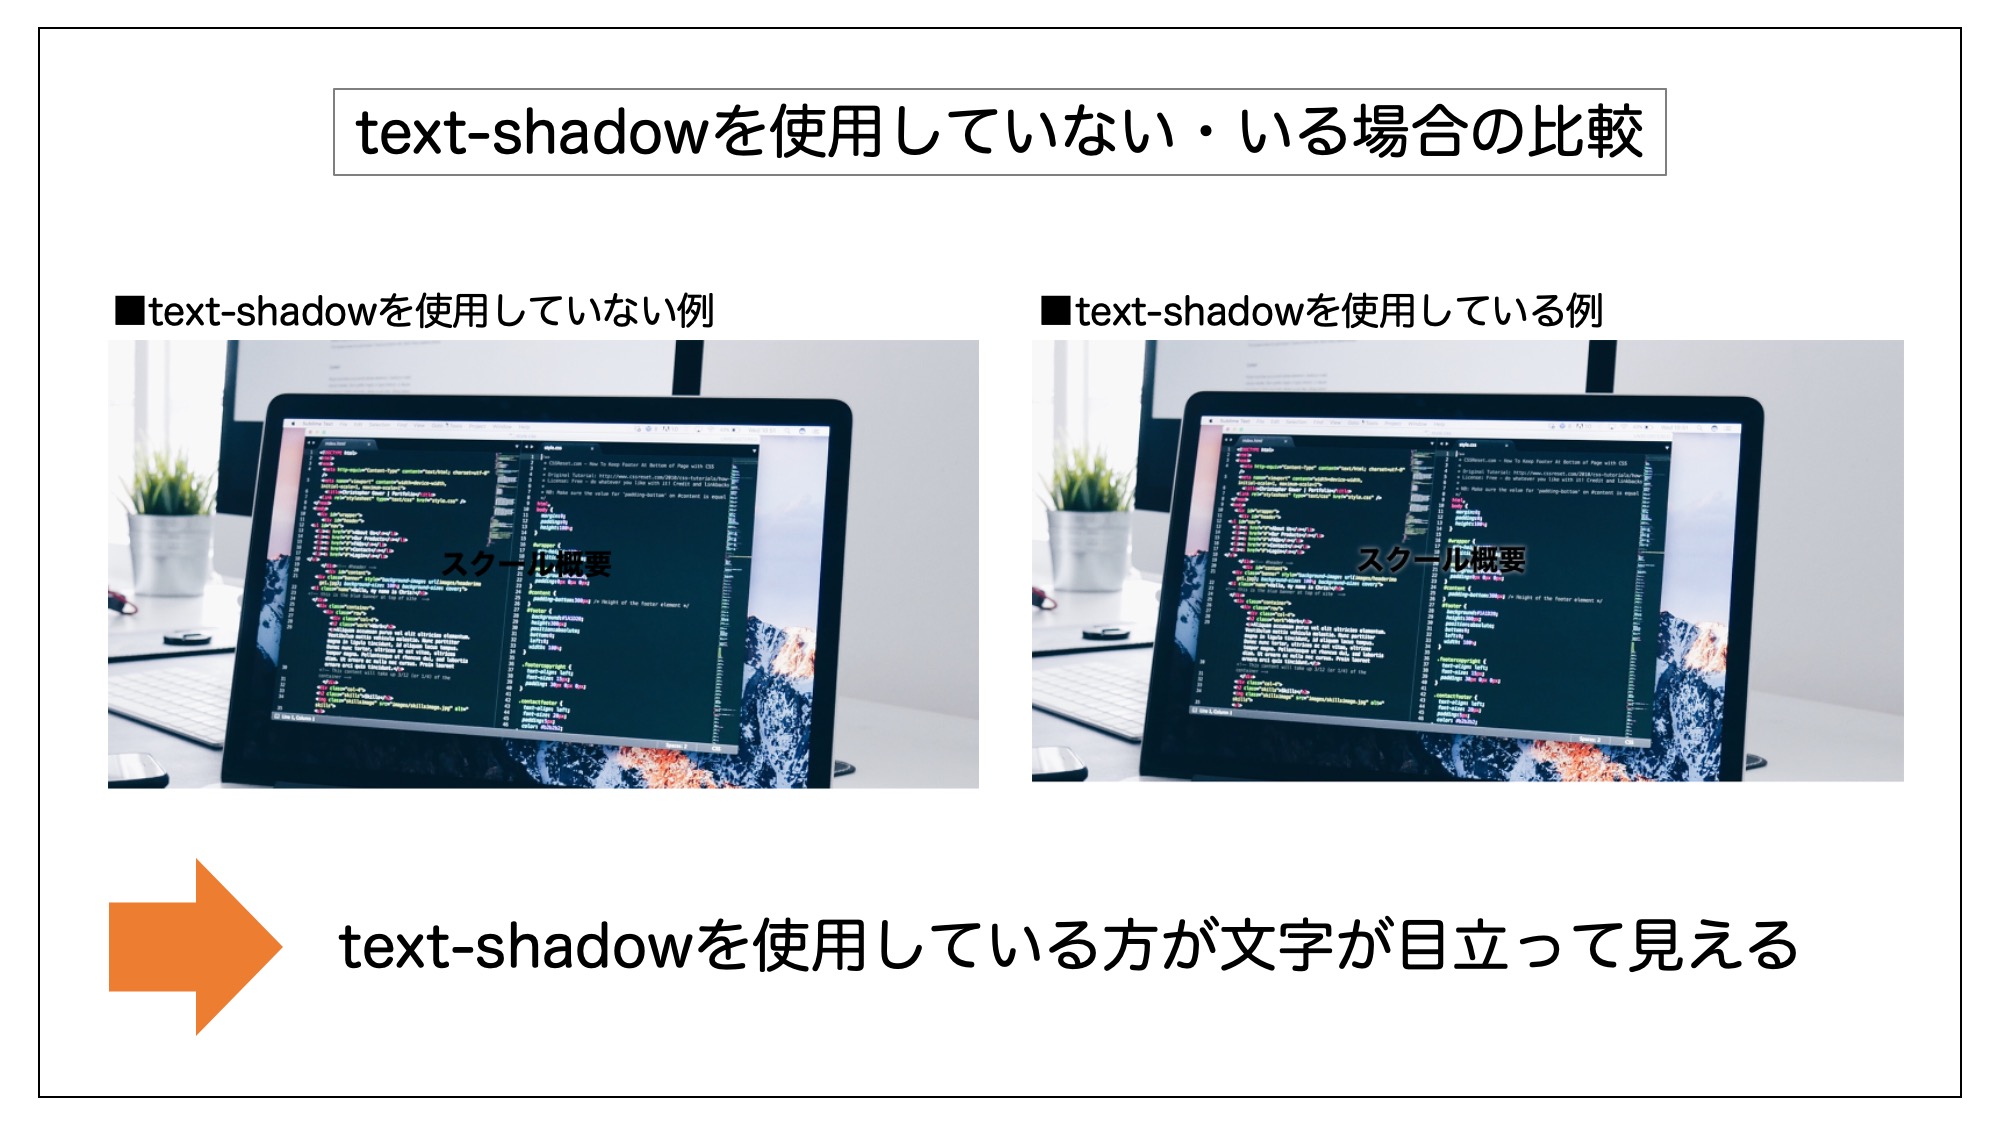 text-shadowを使用していない・いる場合の比較図